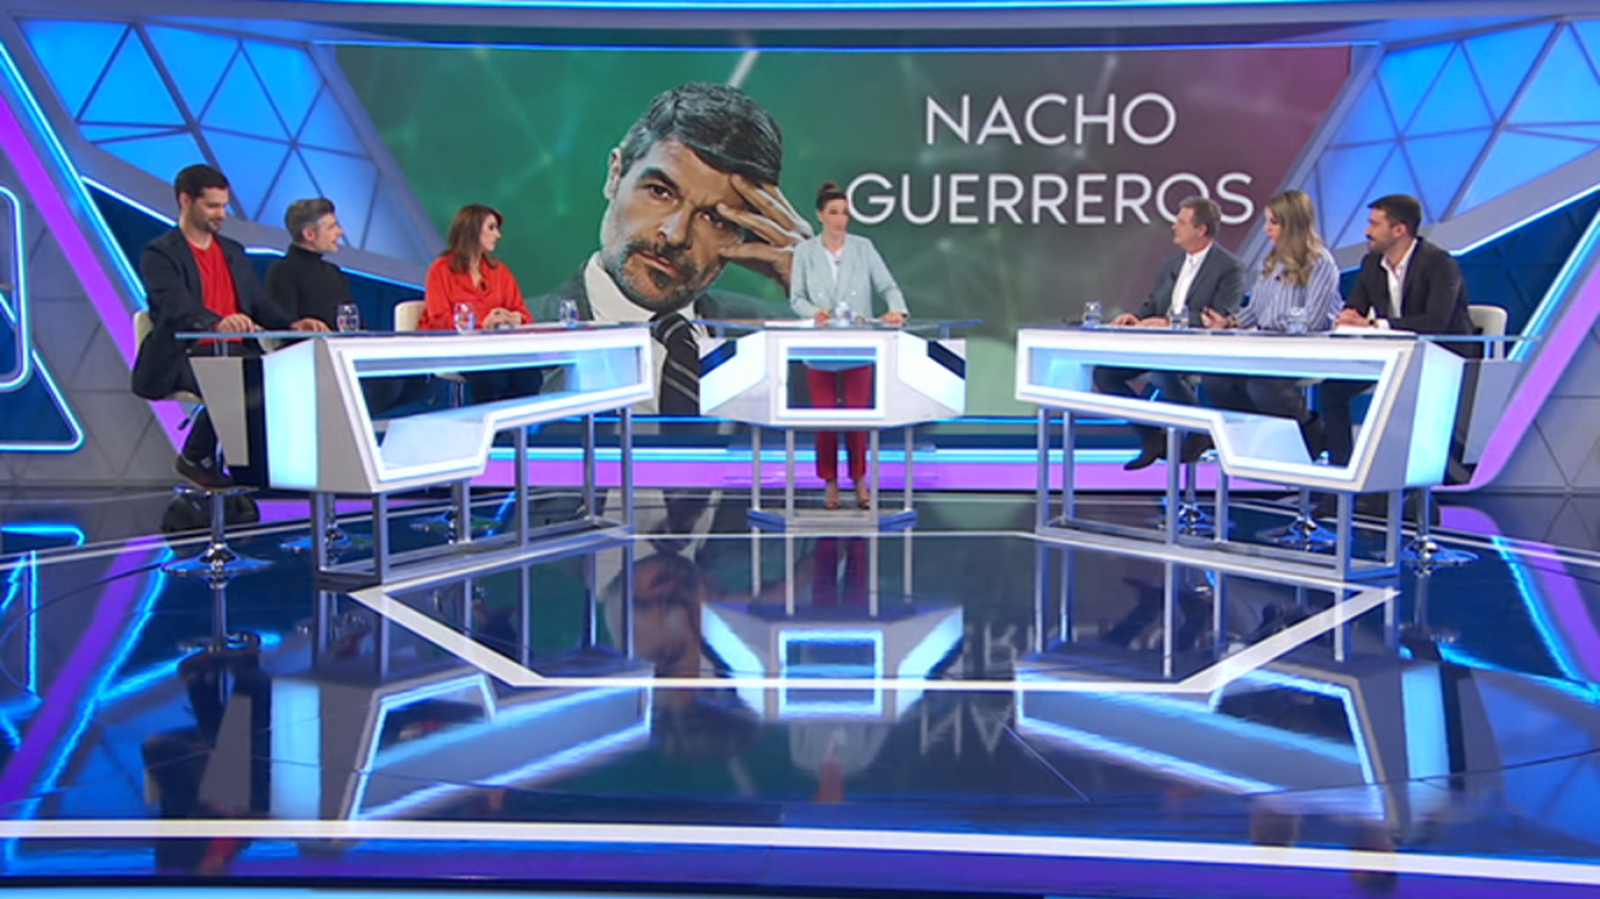 Lo siguiente - Nacho Guerreros - 25/03/19 - ver ahora